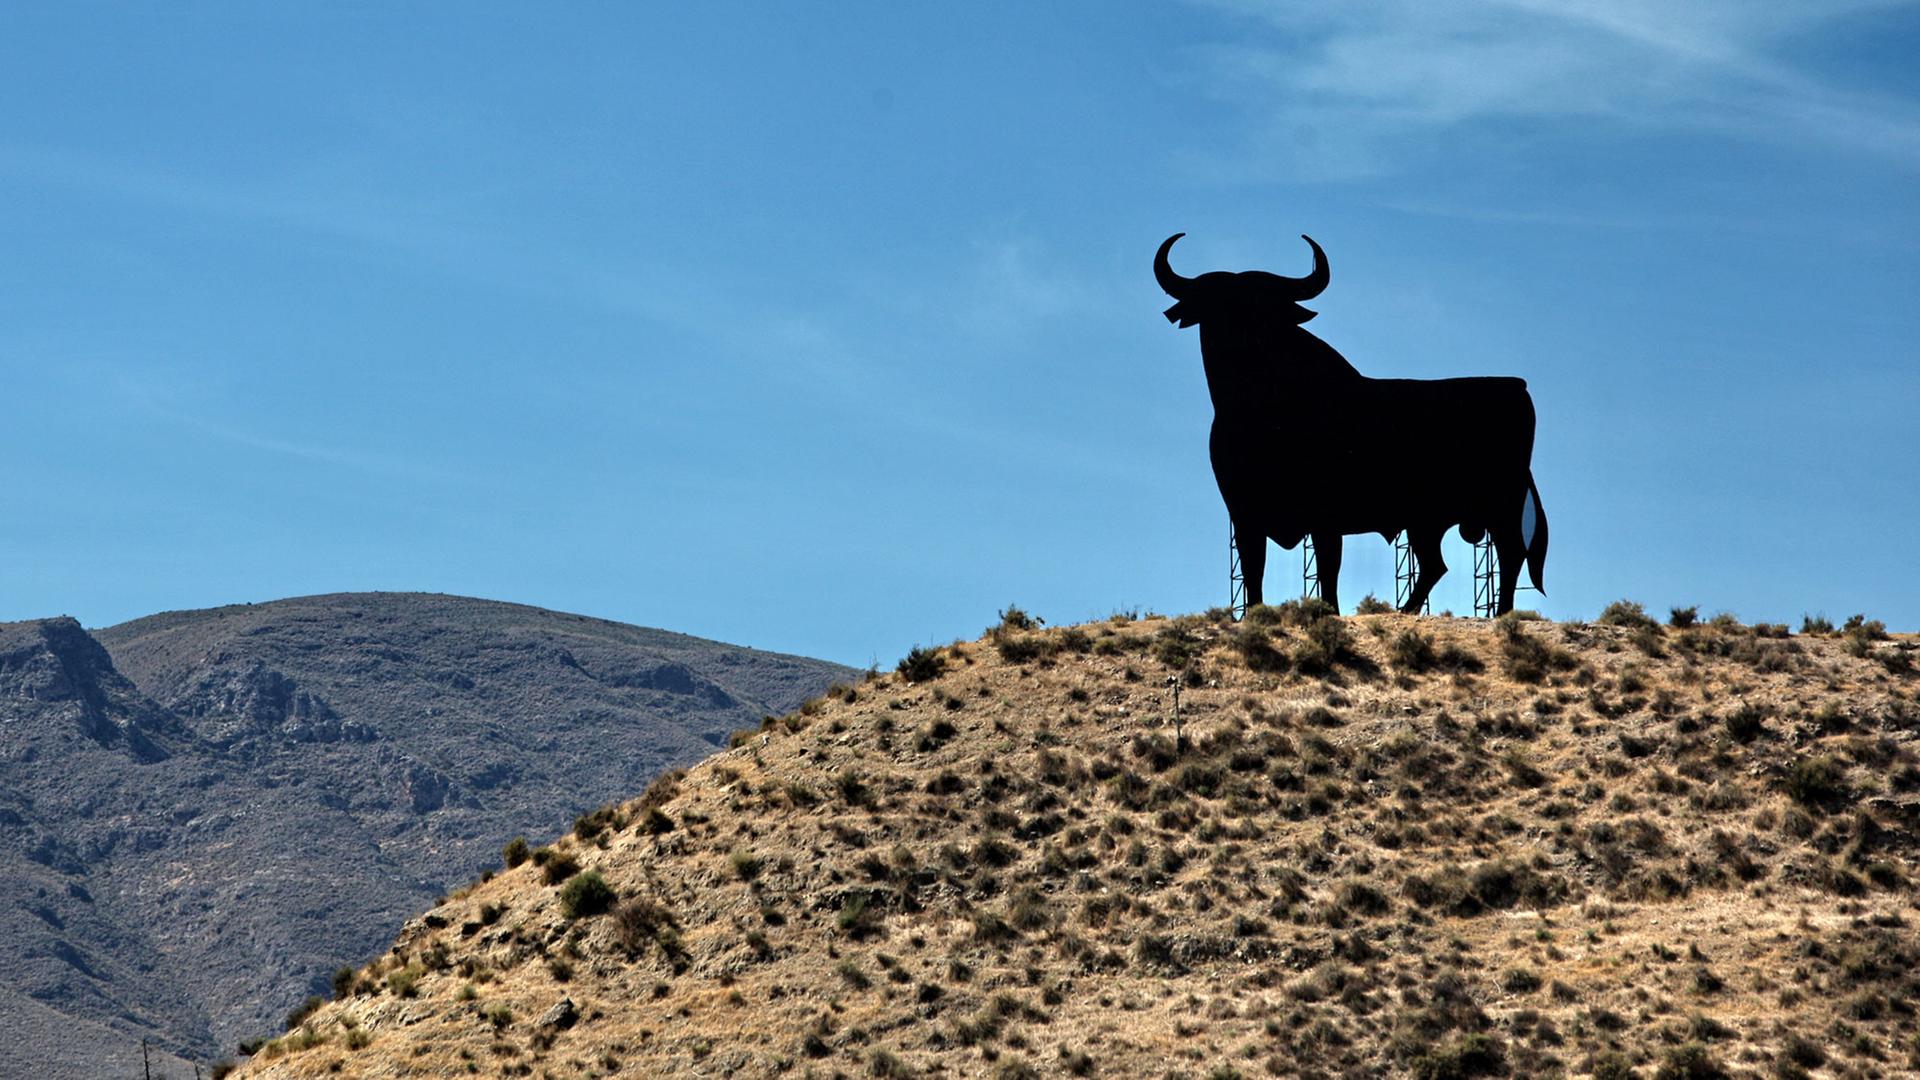 Ein Osborne-Stier, das Markenzeichen von Andalusien und ganz Spanien, steht auf einem Hügel bei Almeria in Andalusien